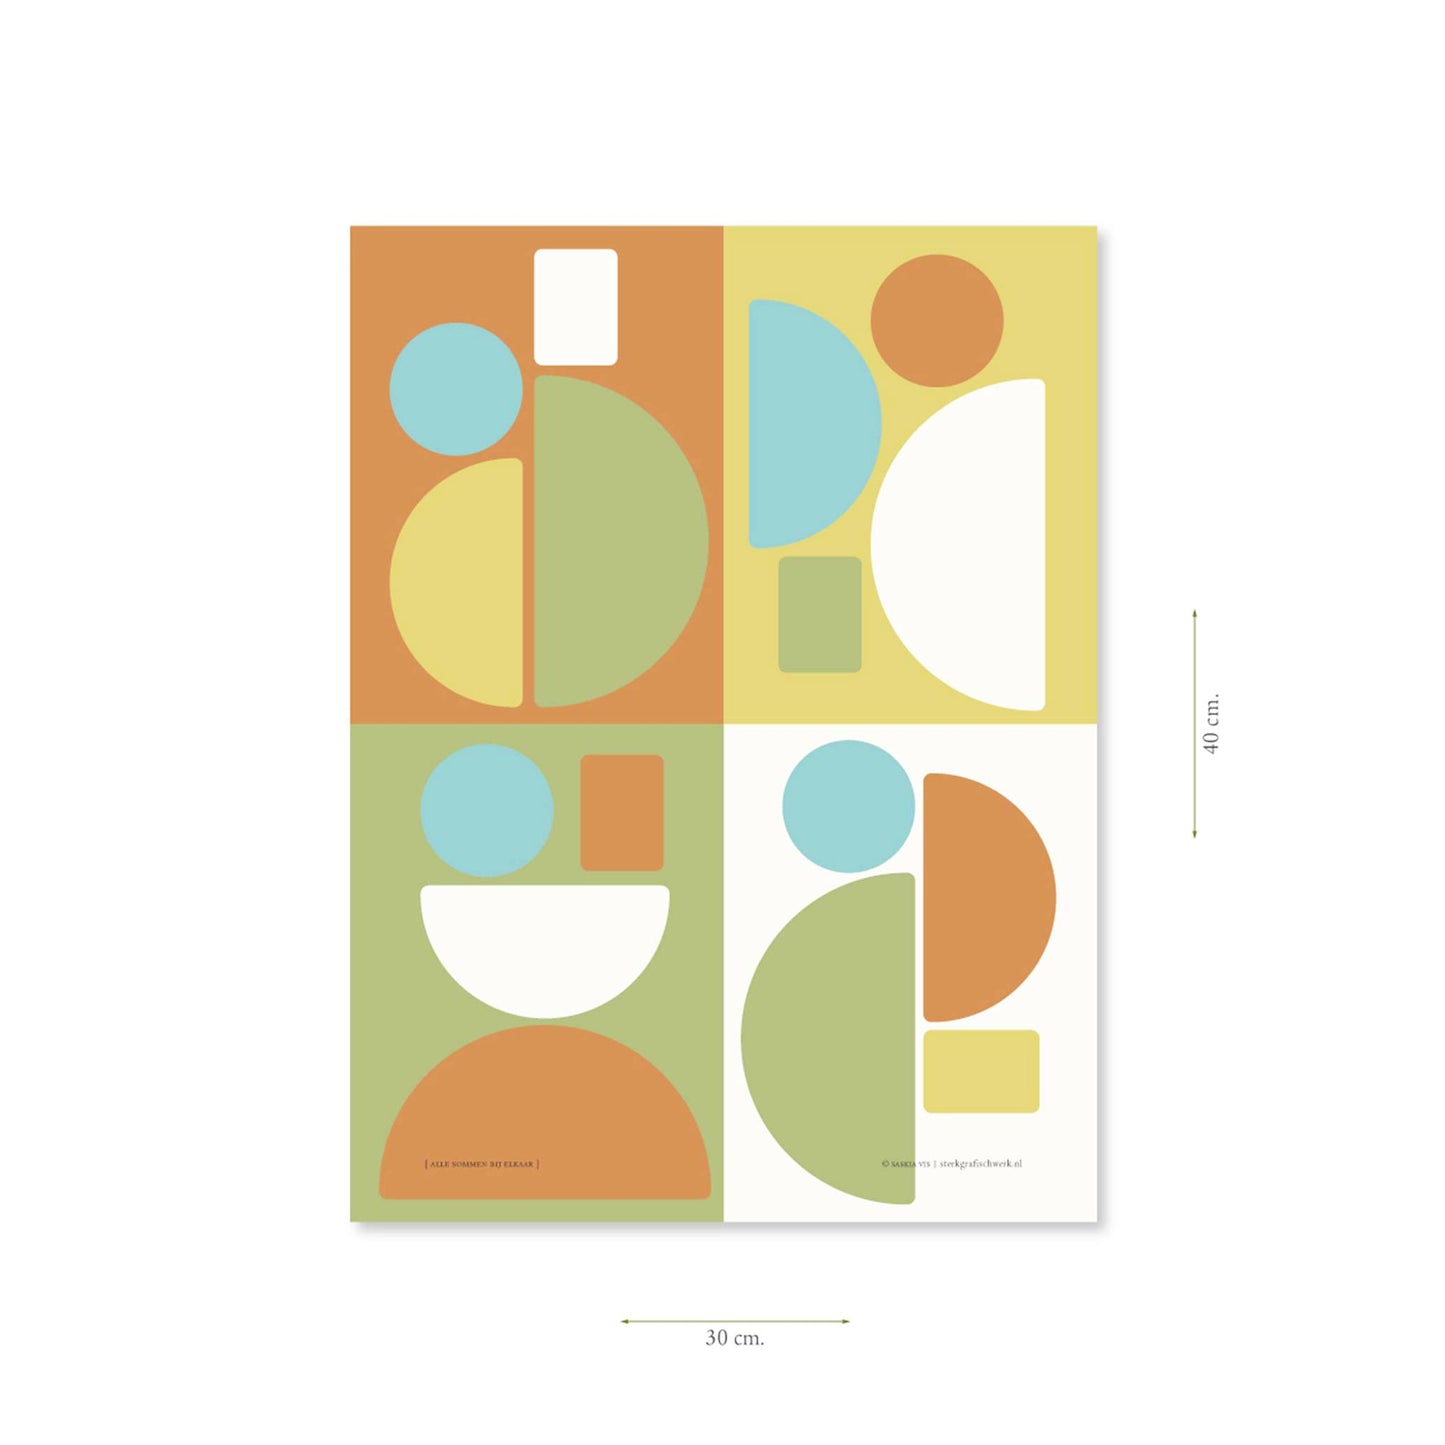 Productafbeelding poster "alle sommen bij elkaar" met aanduiding van het formaat erop weergegeven 30 x 40 cm